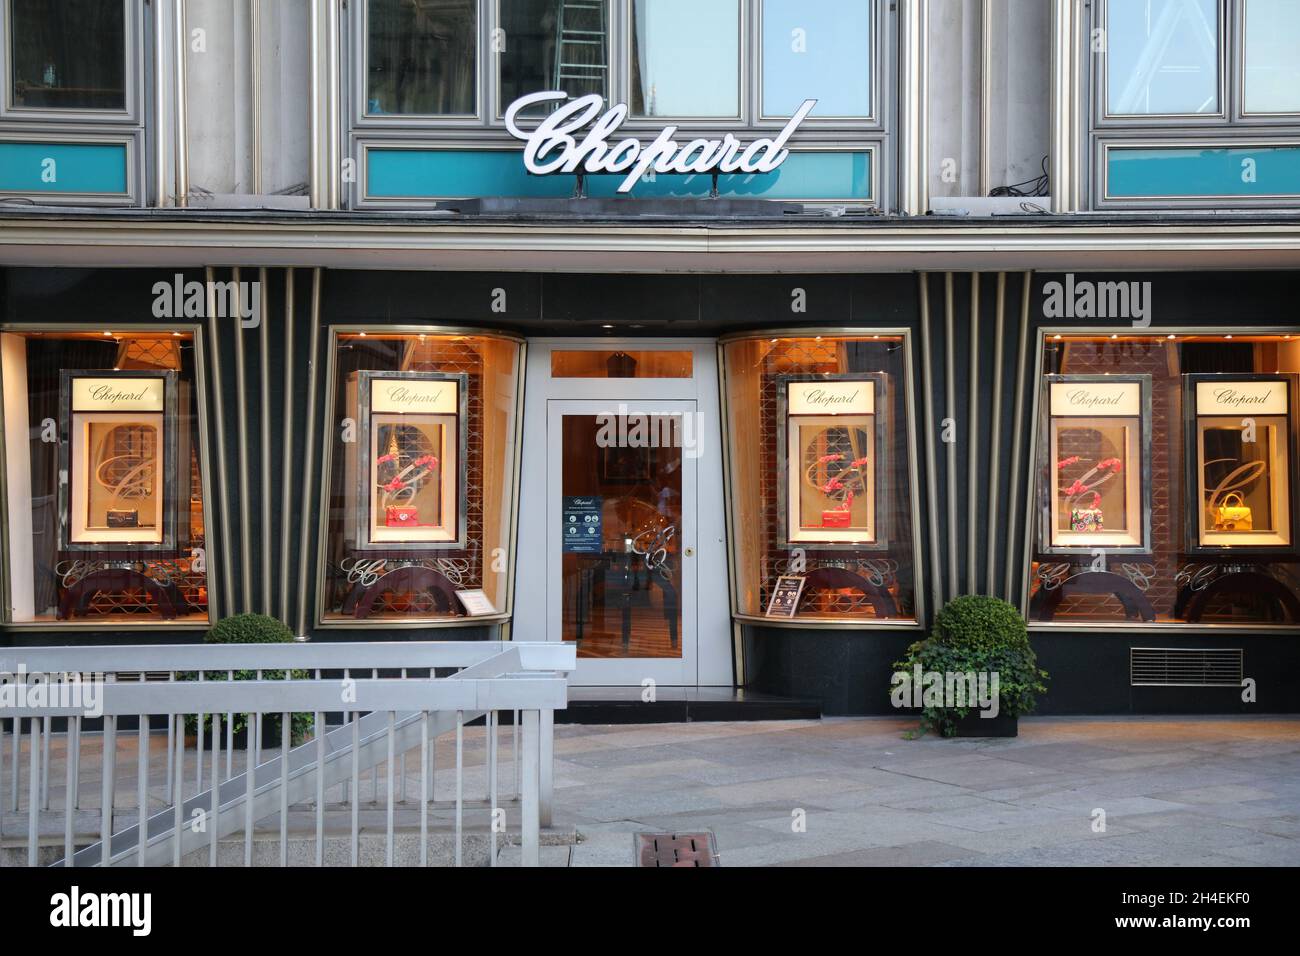 KÖLN, DEUTSCHLAND - 21. SEPTEMBER 2020: Chopard Luxus-Modegeschäft in Köln, Deutschland. Chopard ist eine Schweizer Marke für Uhren, Schmuck und Accessoires Stockfoto